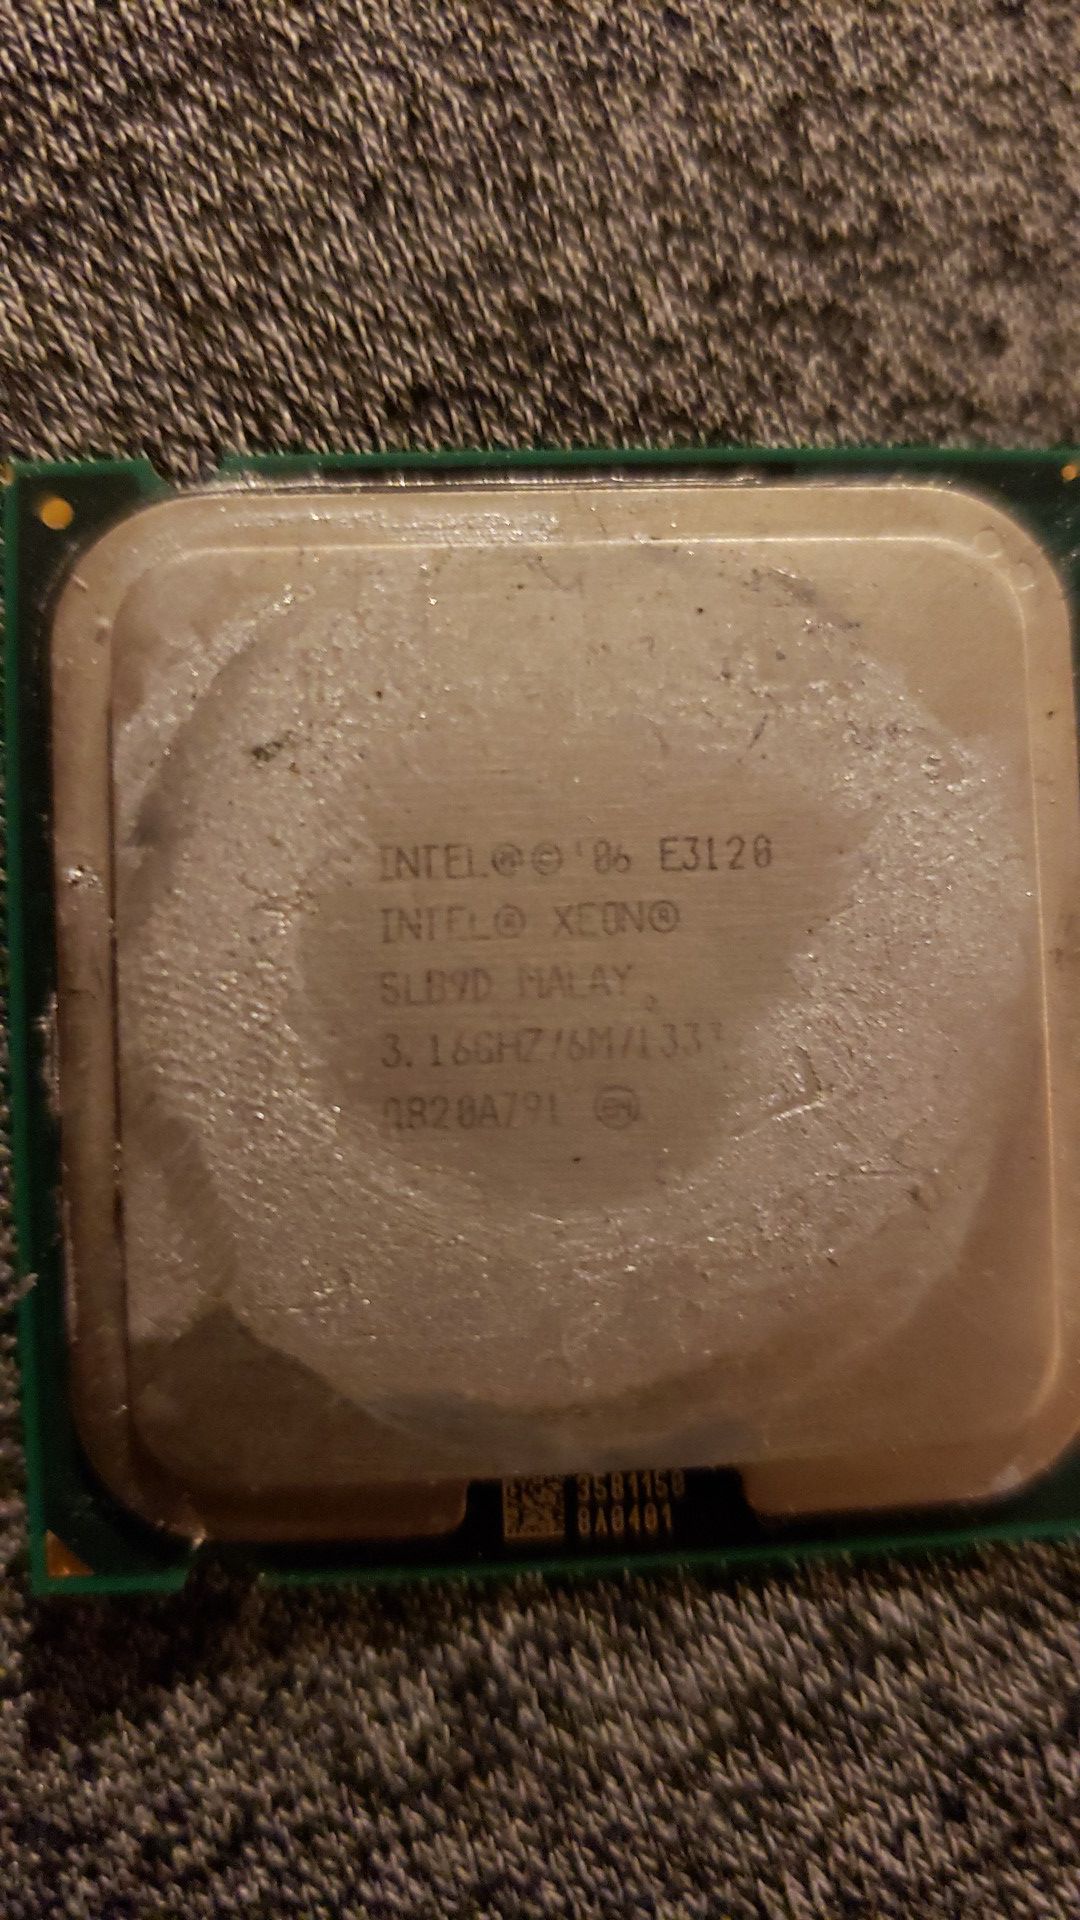 Intel xeon CPU